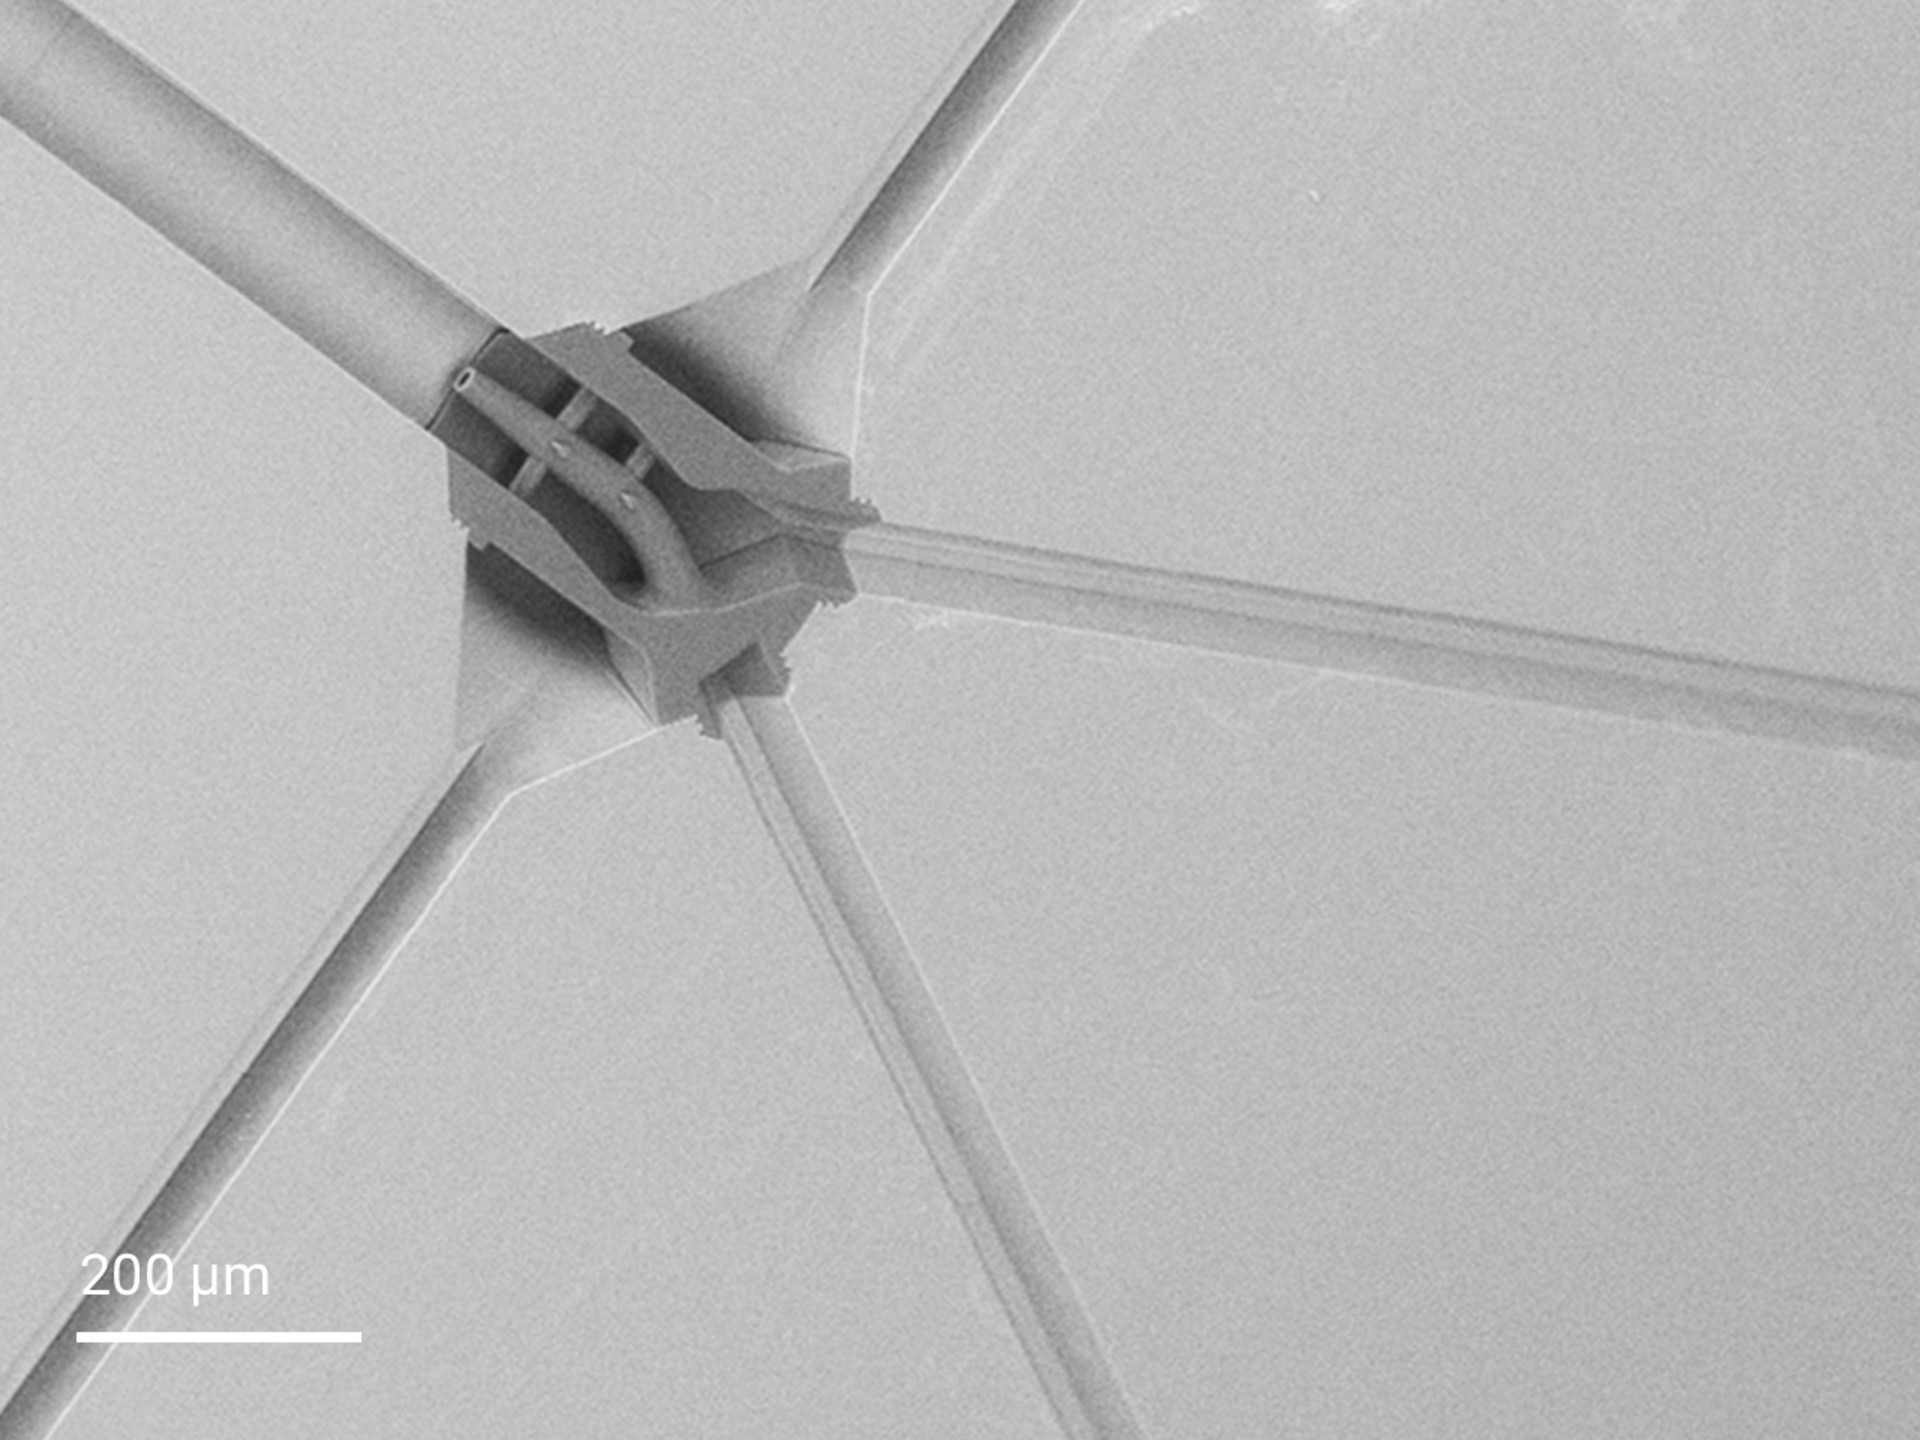 Eingebettete Spinndüse, direkt in ein mikrofluidisches Kanalsystem 3D-gedruckt